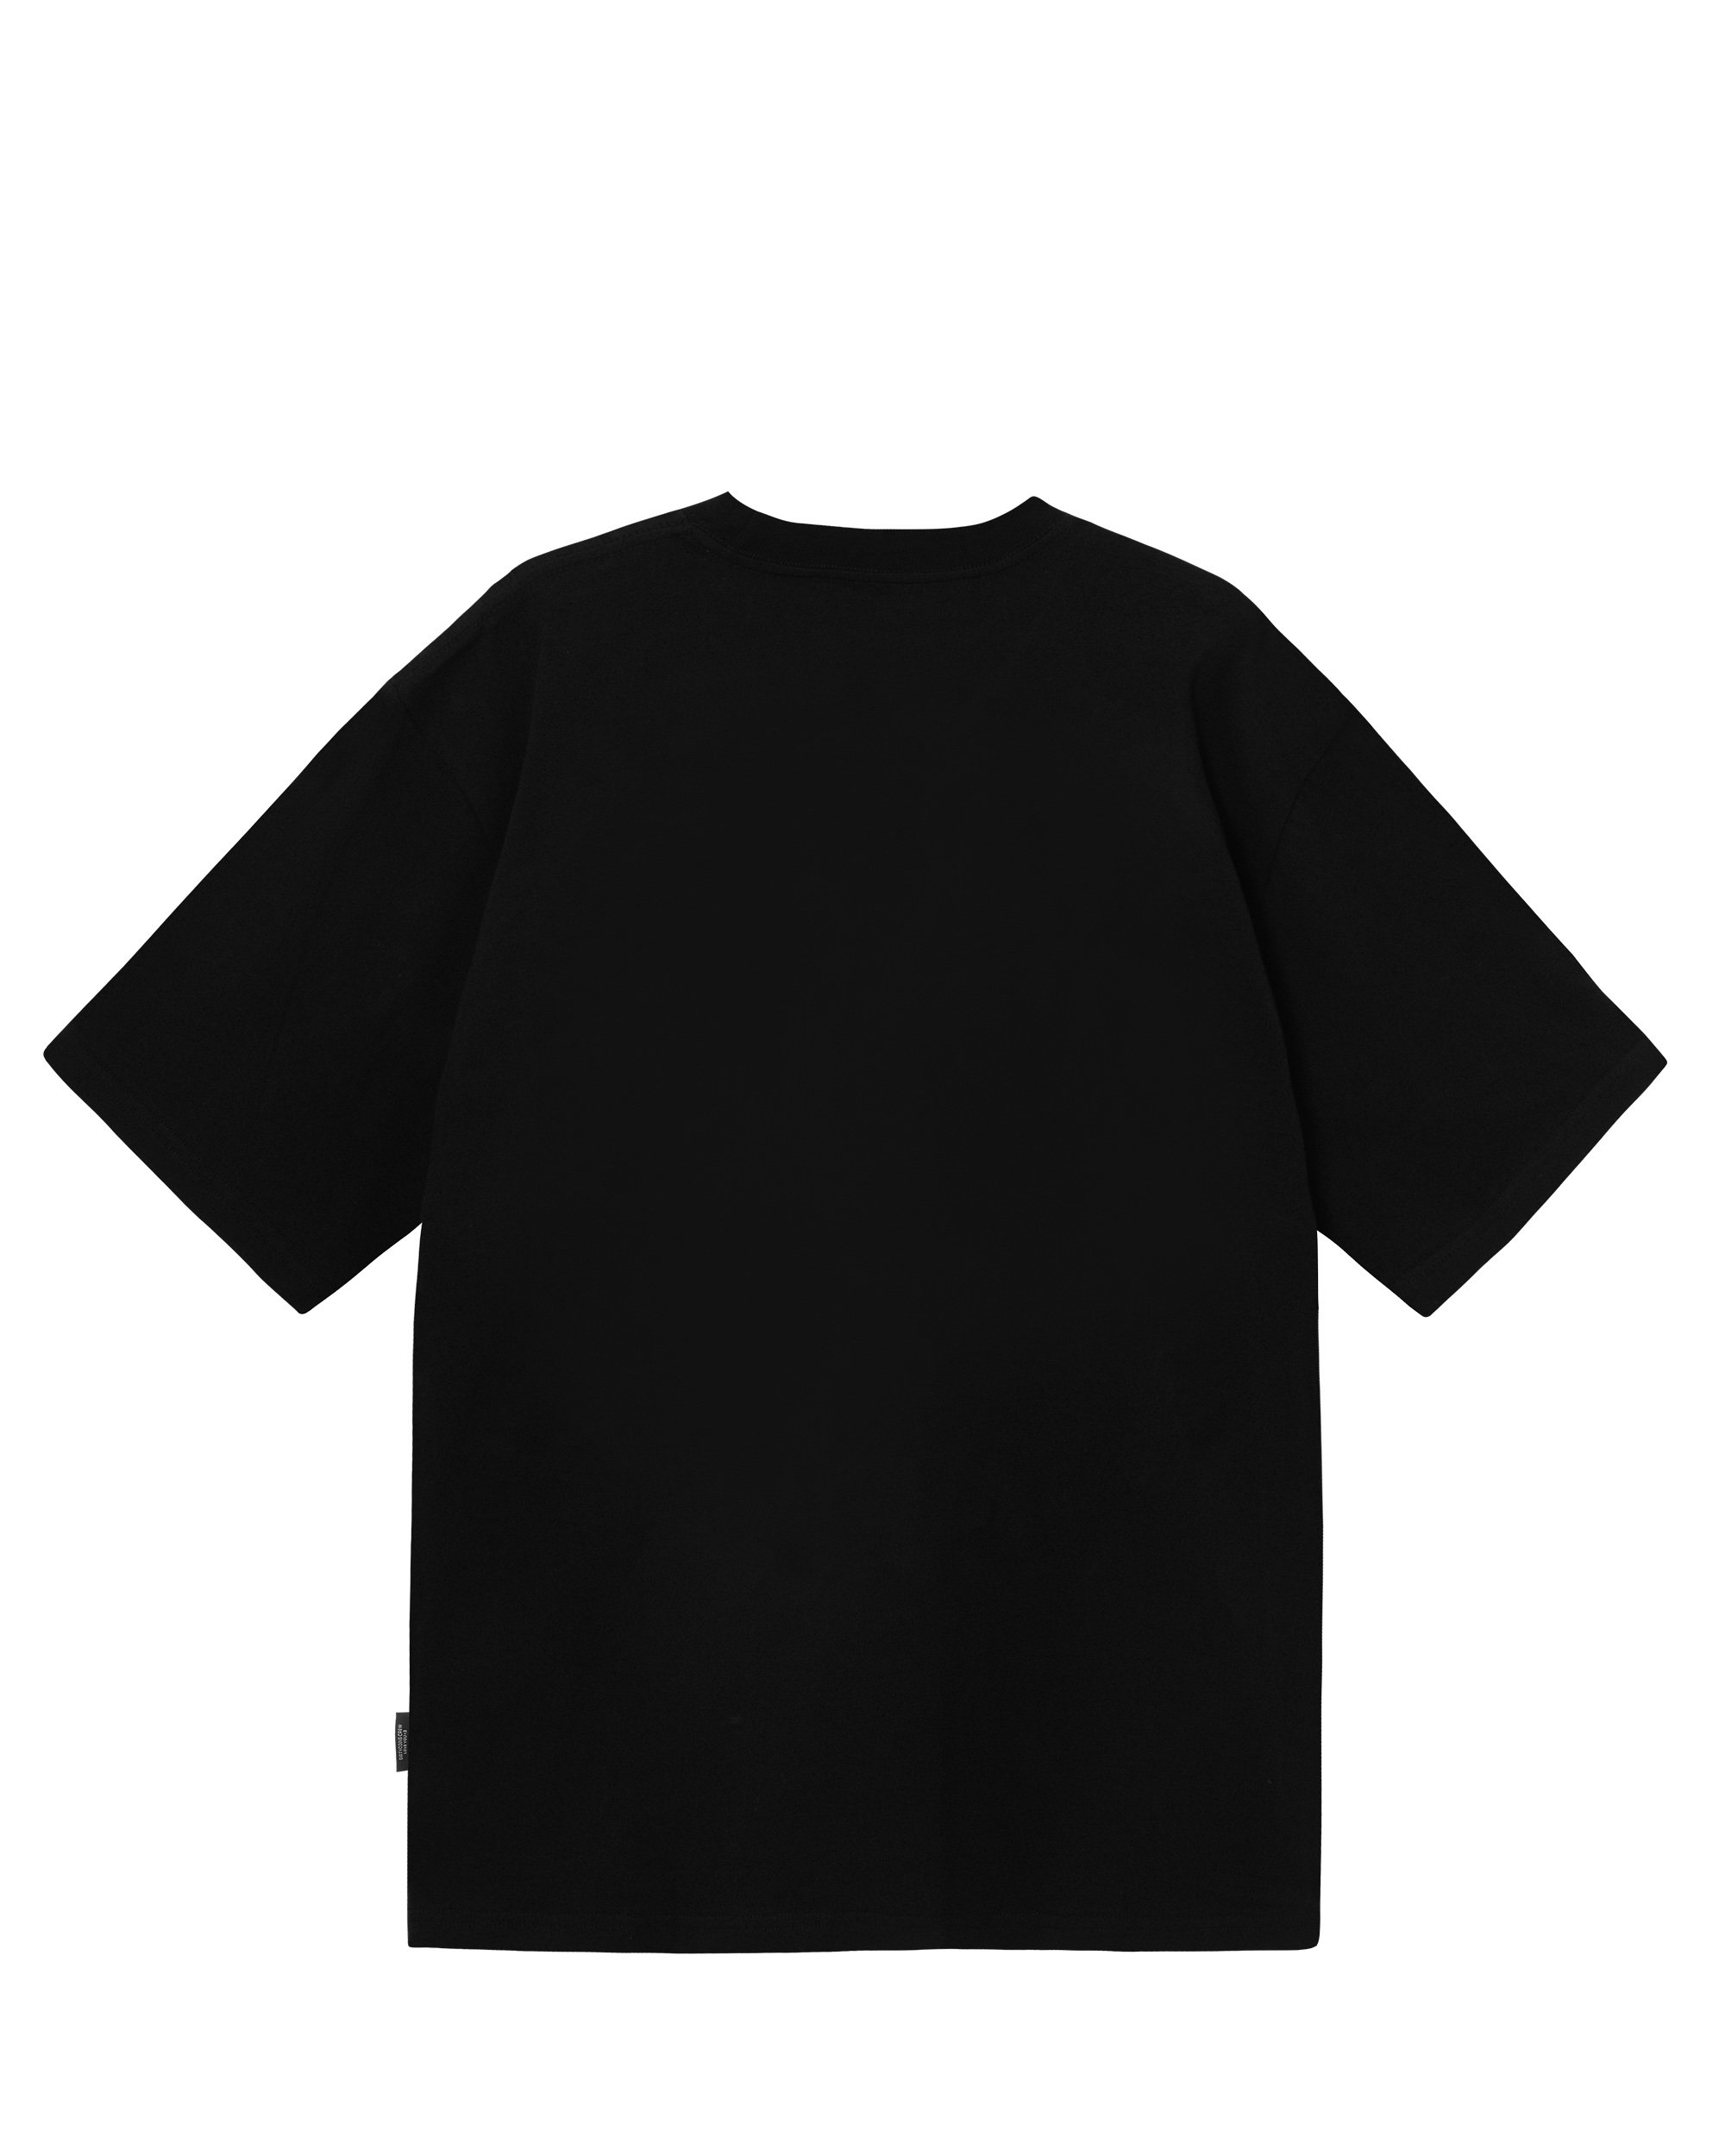 Dico Star Basic T-shirt - Black